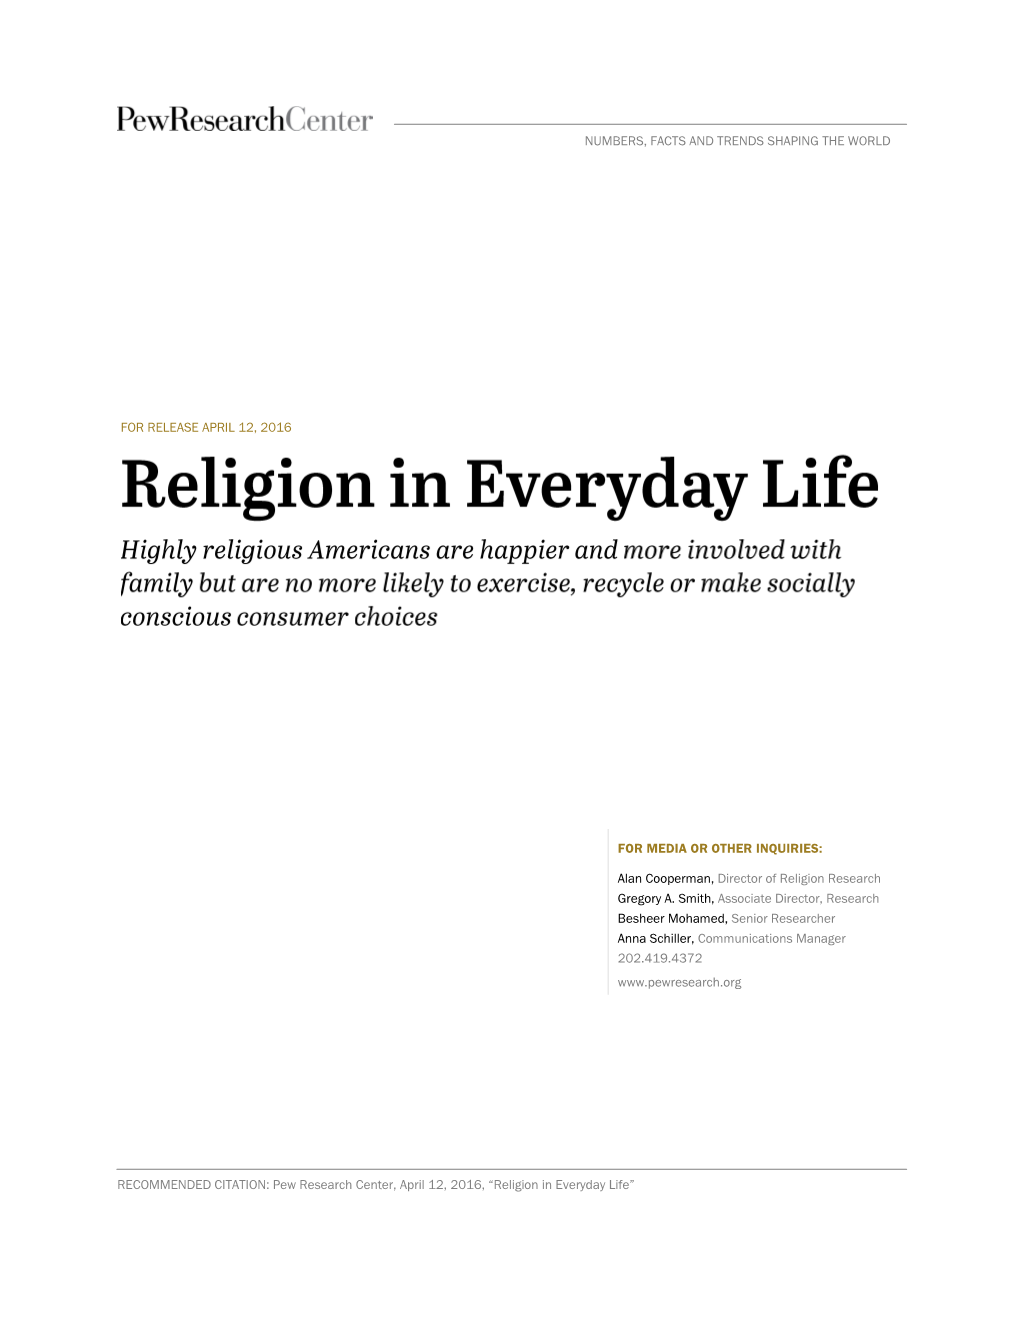 Religion in Everyday Life”